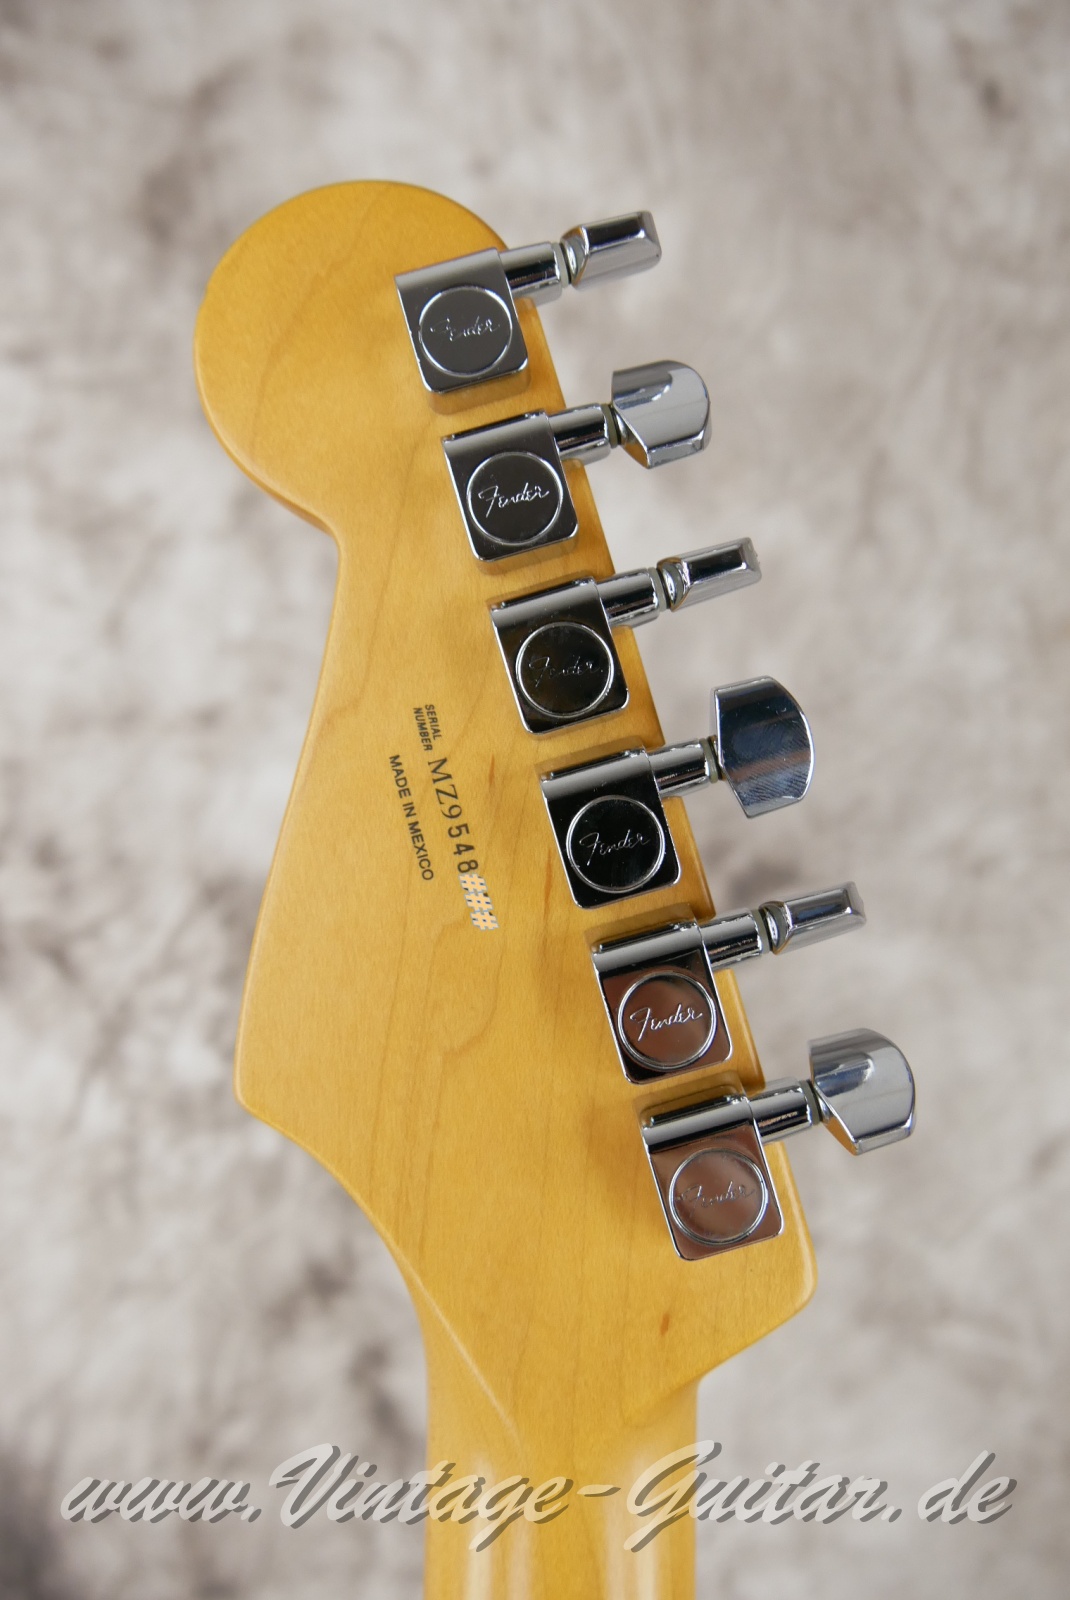 Fender-Standard-Stratocaster-MIM-2009-white-004.jpg